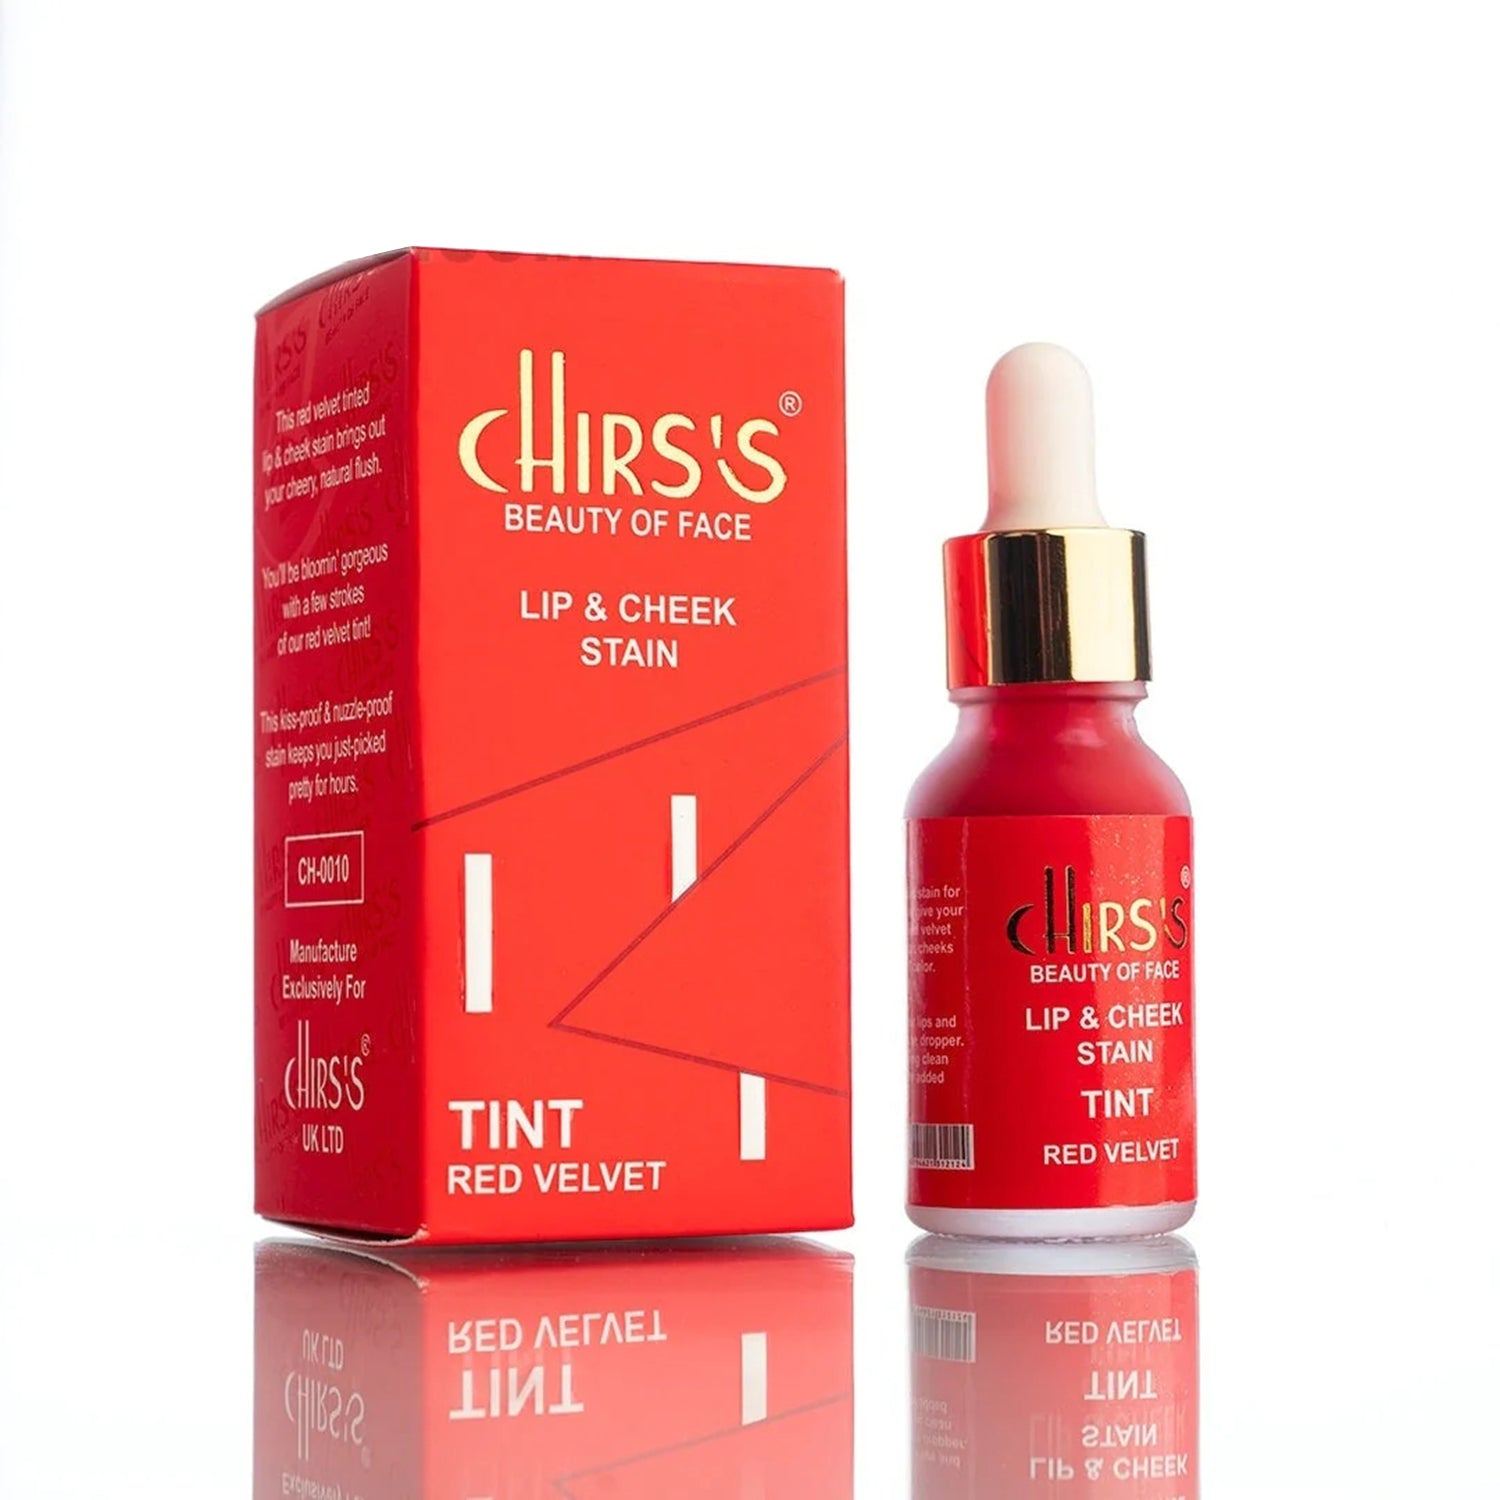 Chirs's Lips & Cheek Stain Tint - Red Velvet - FlyingCart.pk